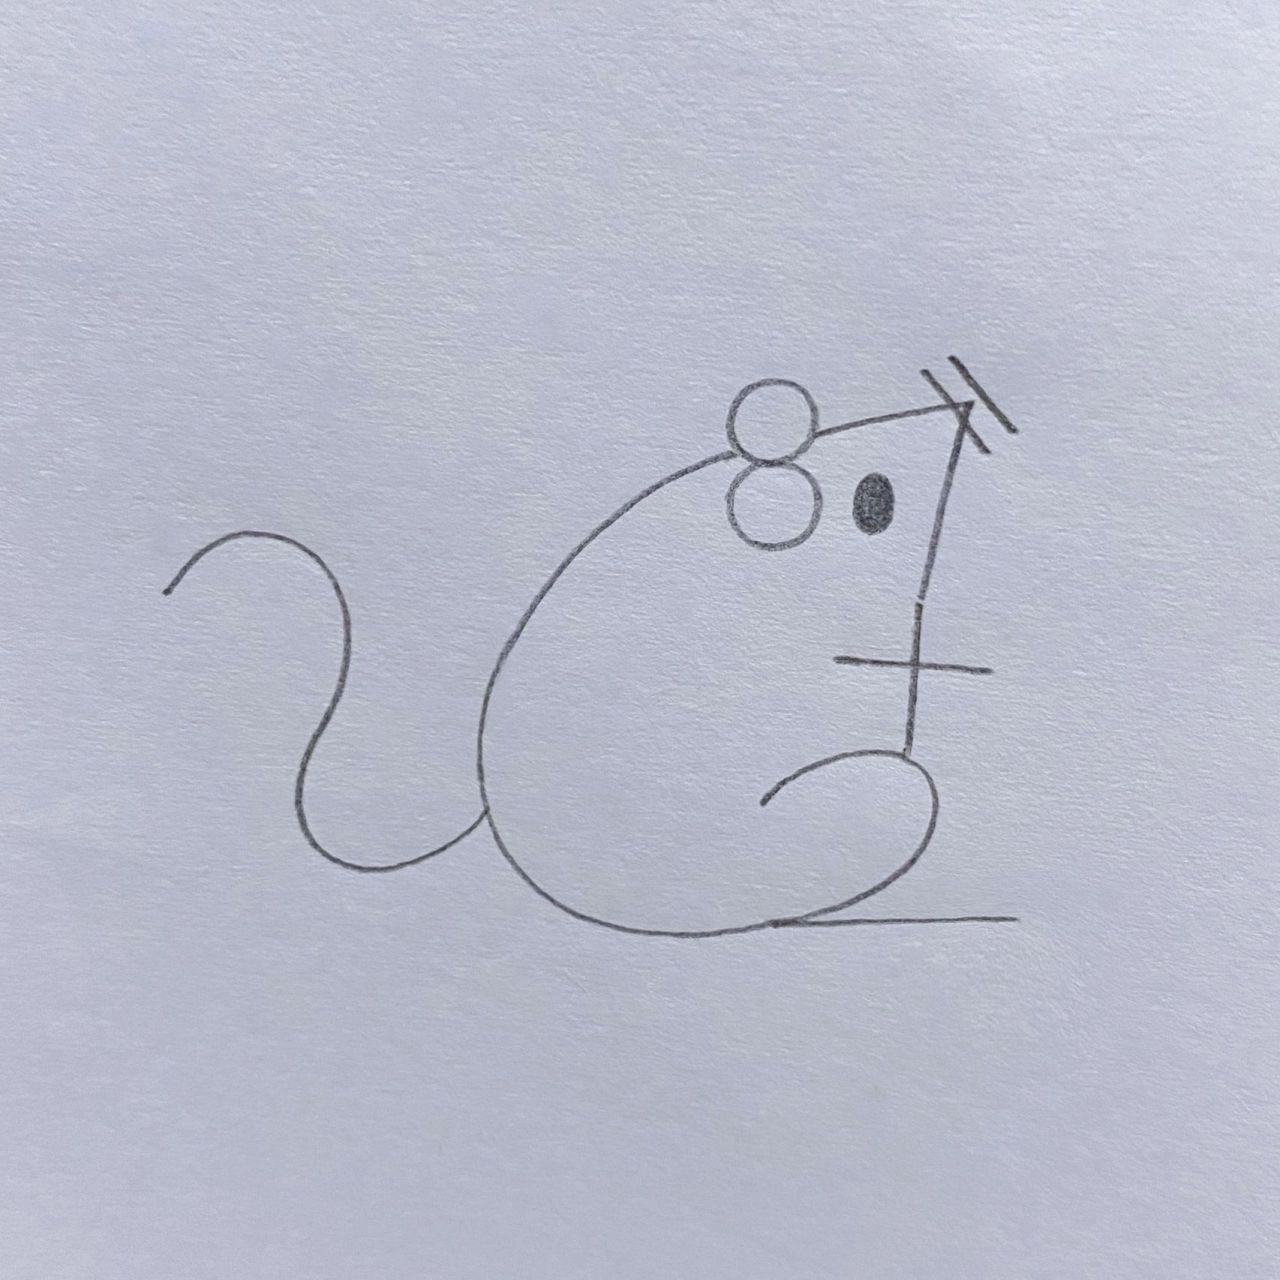 小老鼠简笔画图图片